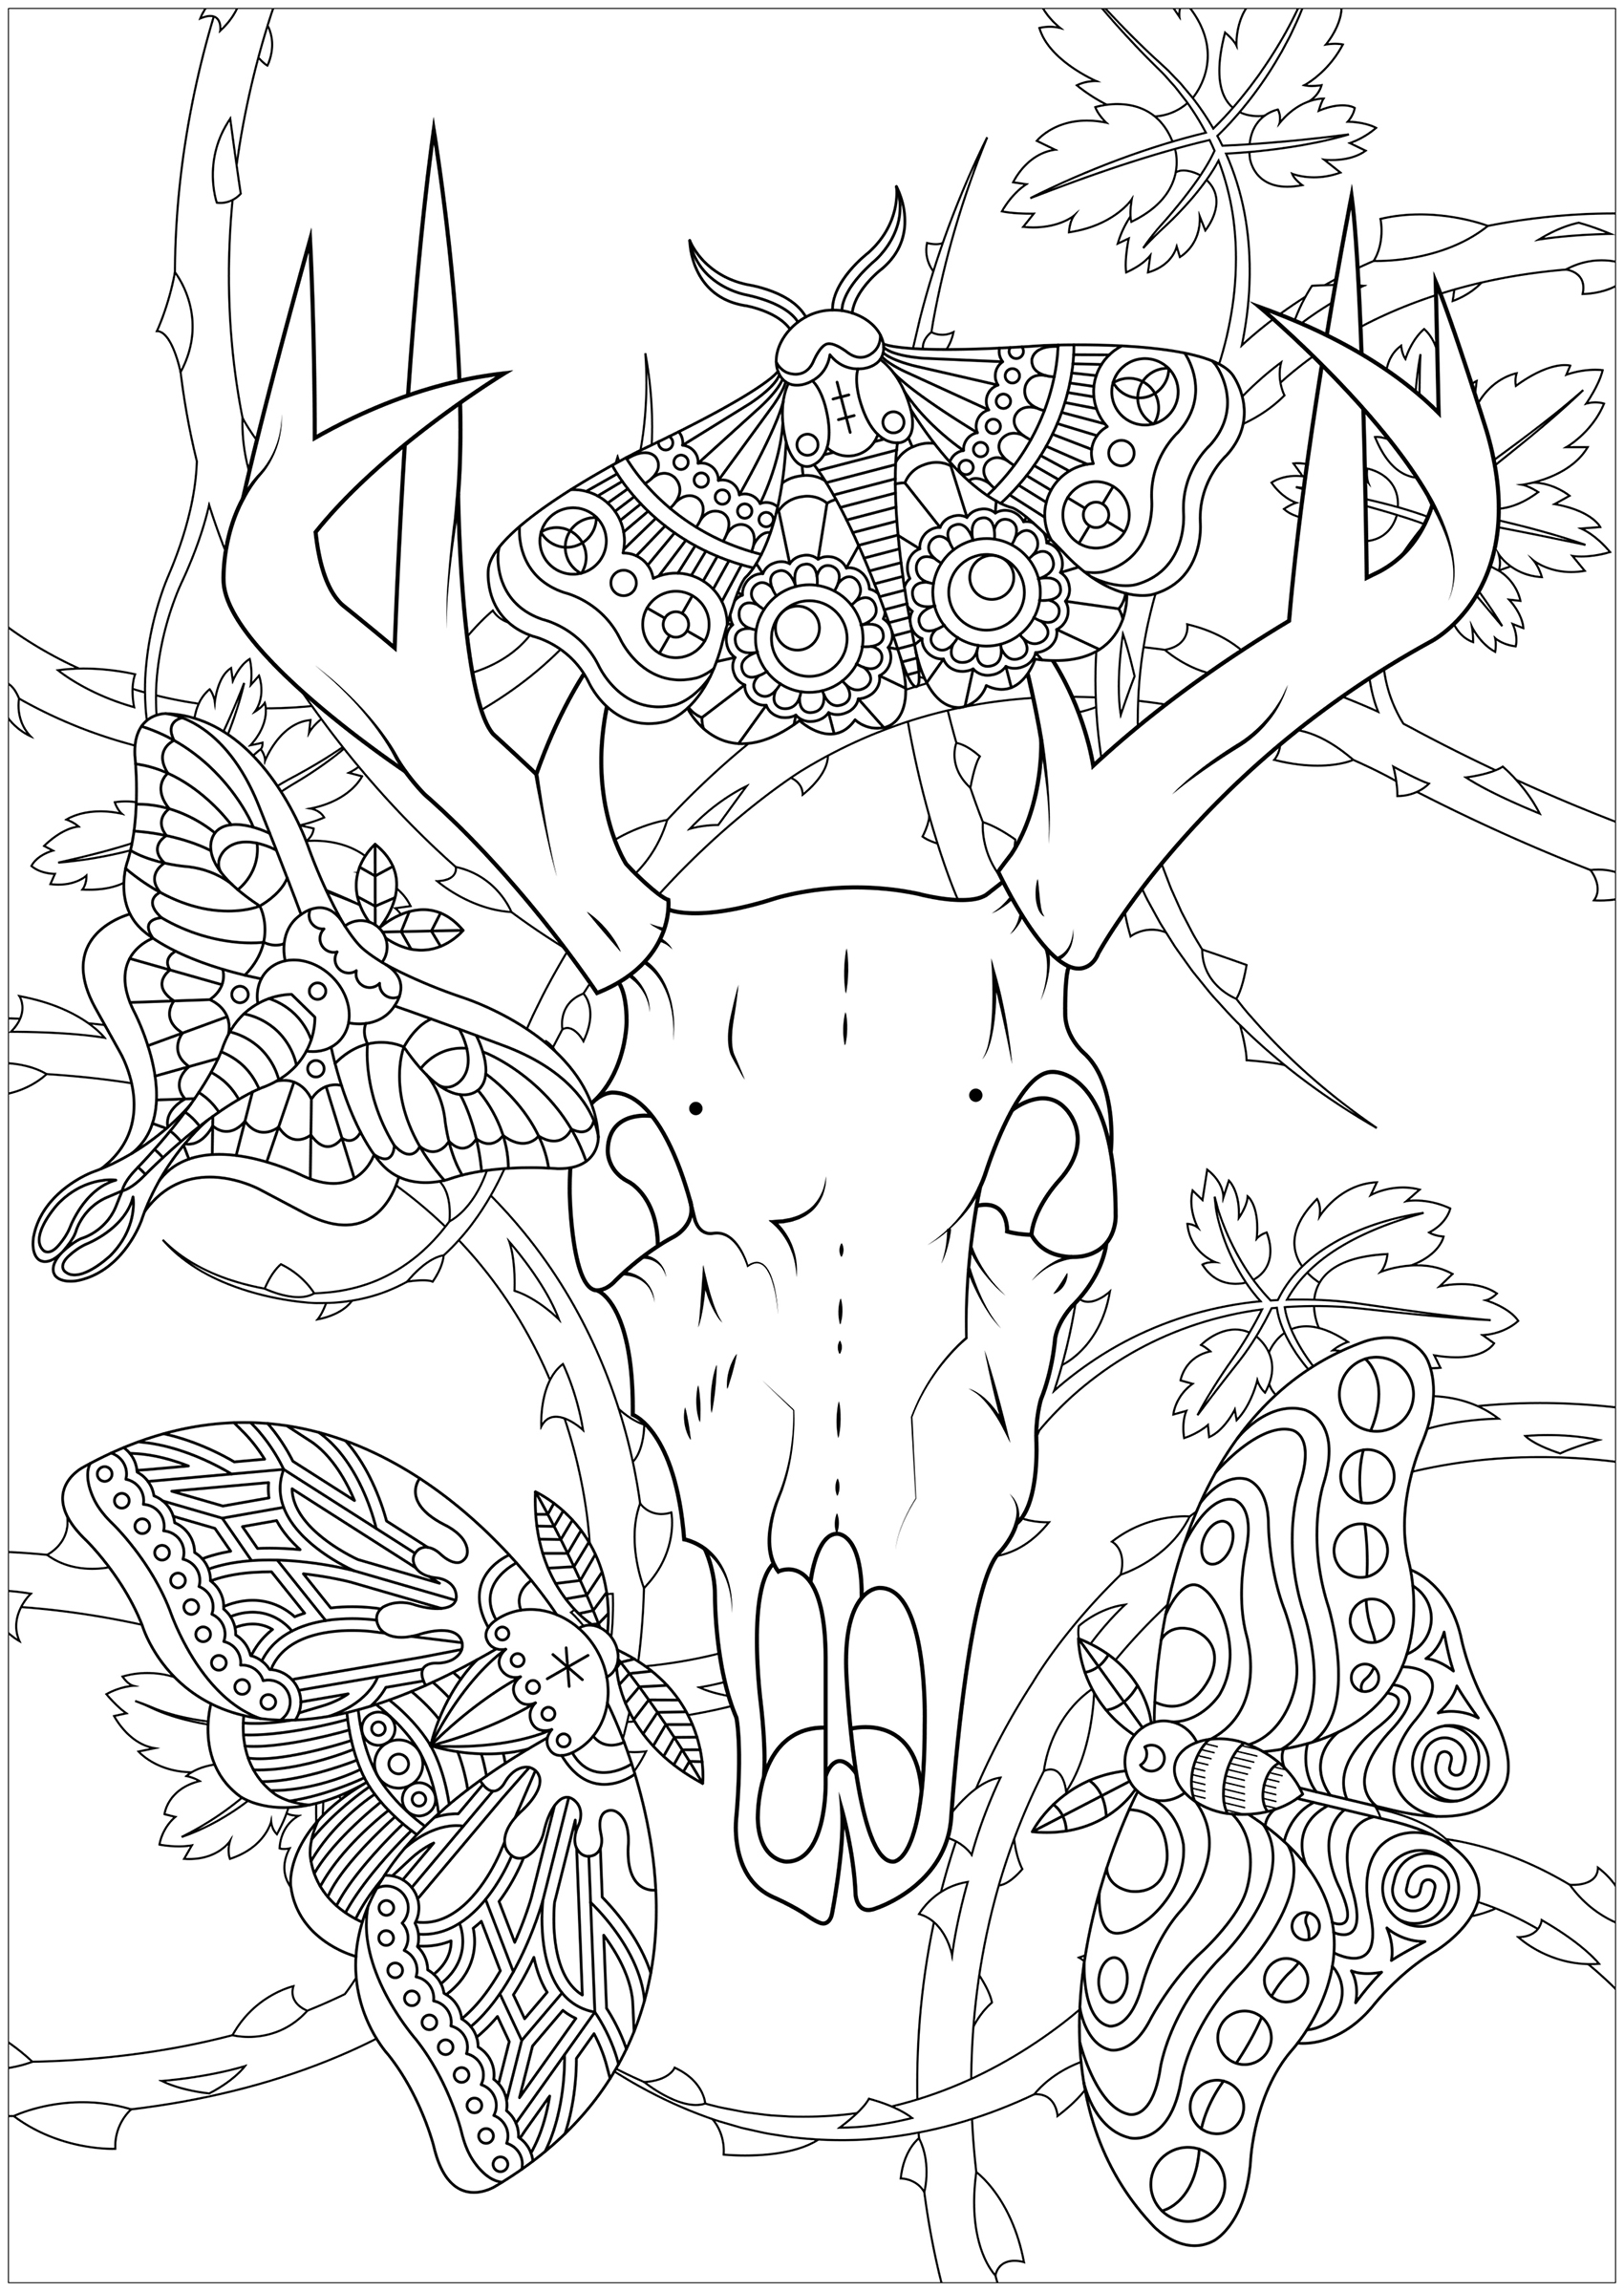 Vier Motten und ein Hirschschädel, mit Brombeeren im Hintergrund ... Eine düstere und faszinierende Malvorlage, Künstler : Lucie